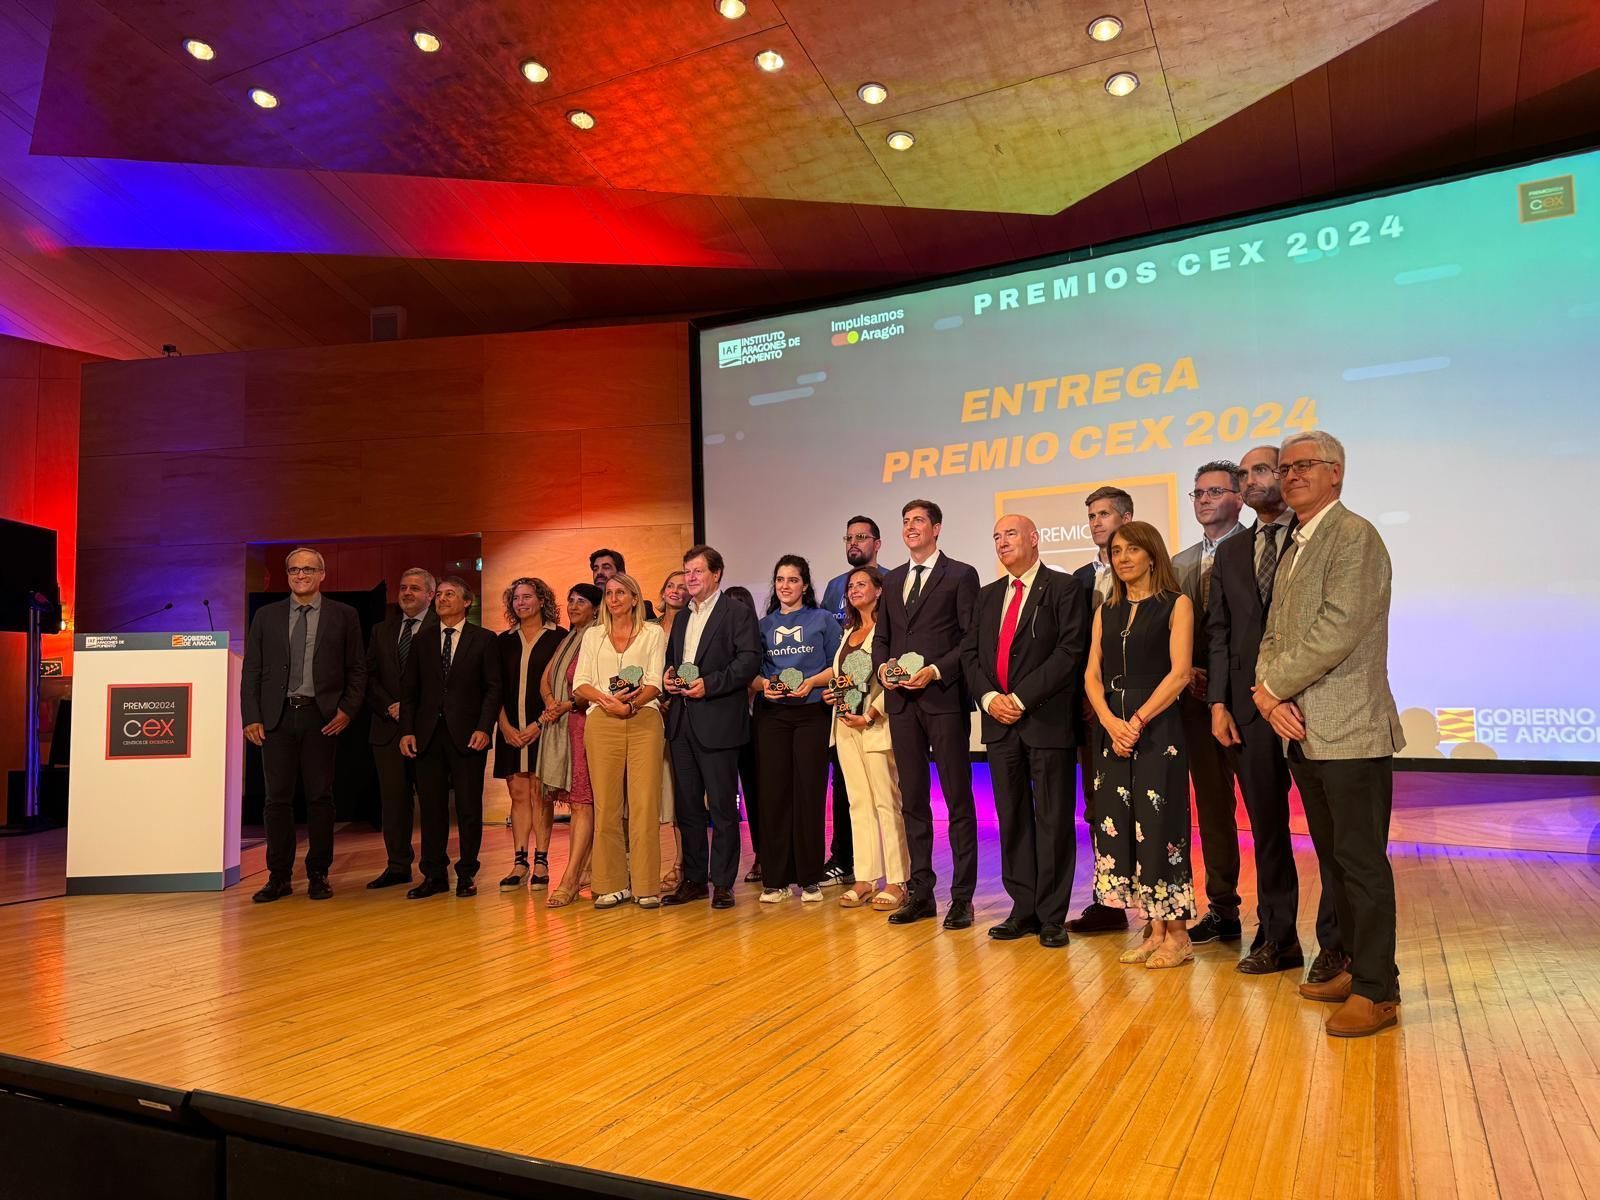 El proyecto ha sido elegido como uno de los cinco finalistas en toda España en los Premios CEX 2024 sobre Inteligencia Artificial.